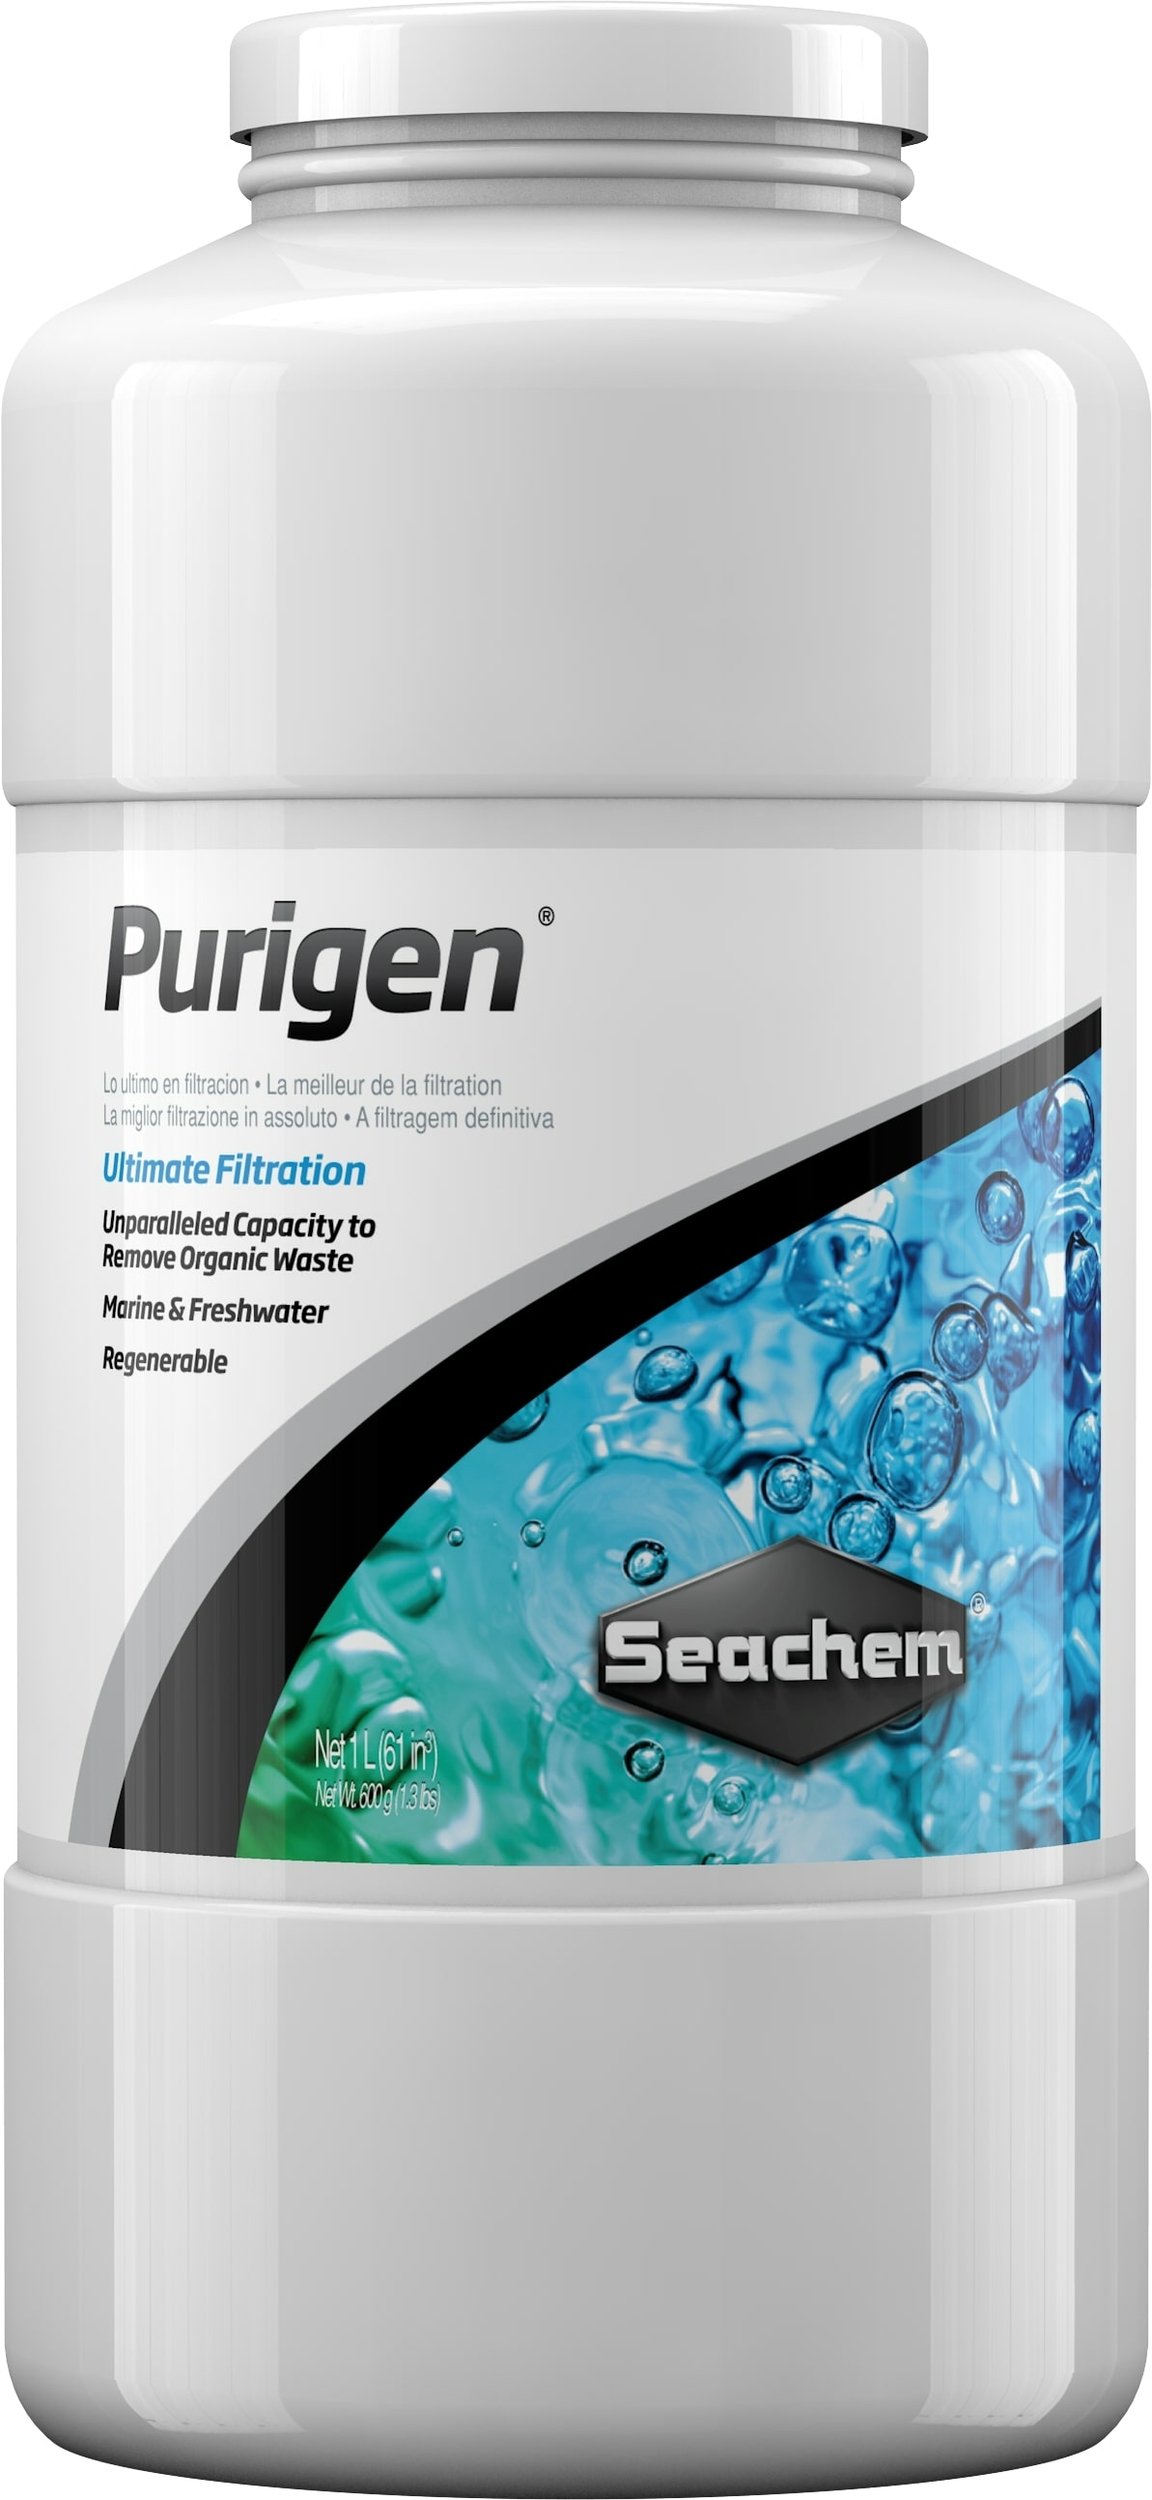 seachem-purigen-1-l-masse-de-filtration-synthetique-absorbant-les-mauvaises-substances-dans-l-eau-de-l-aquarium